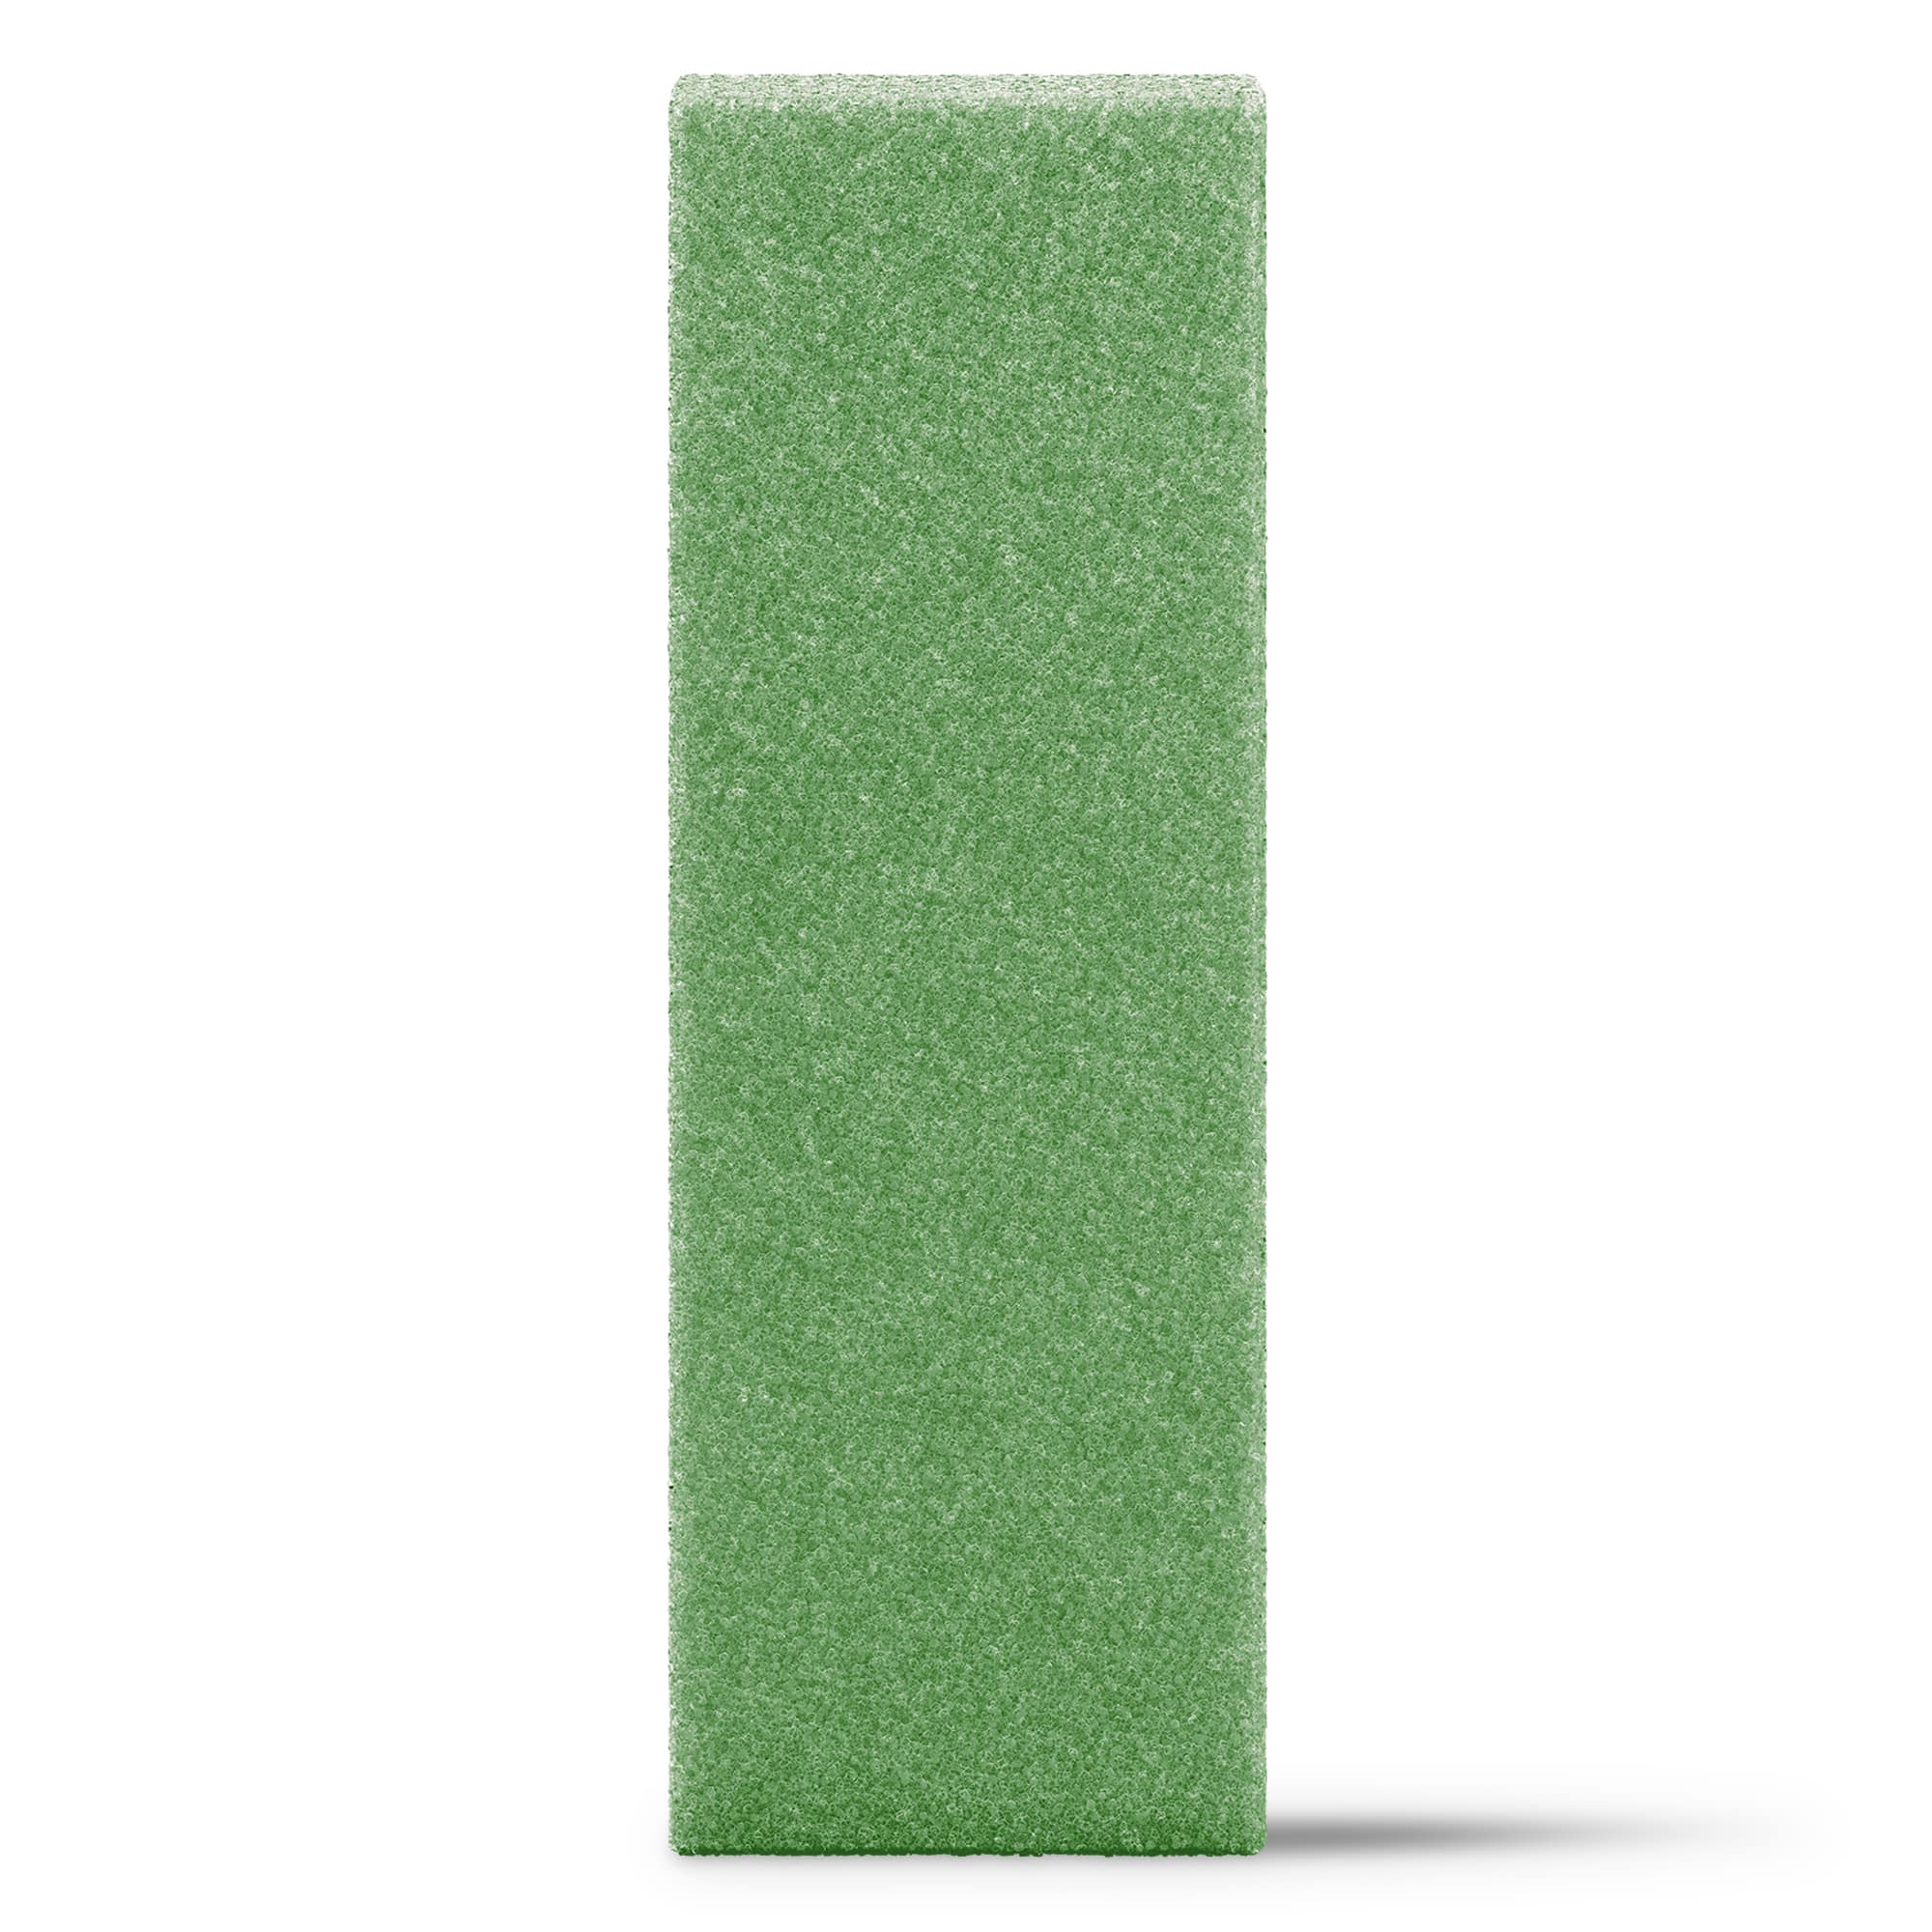 Green Craft Foam 